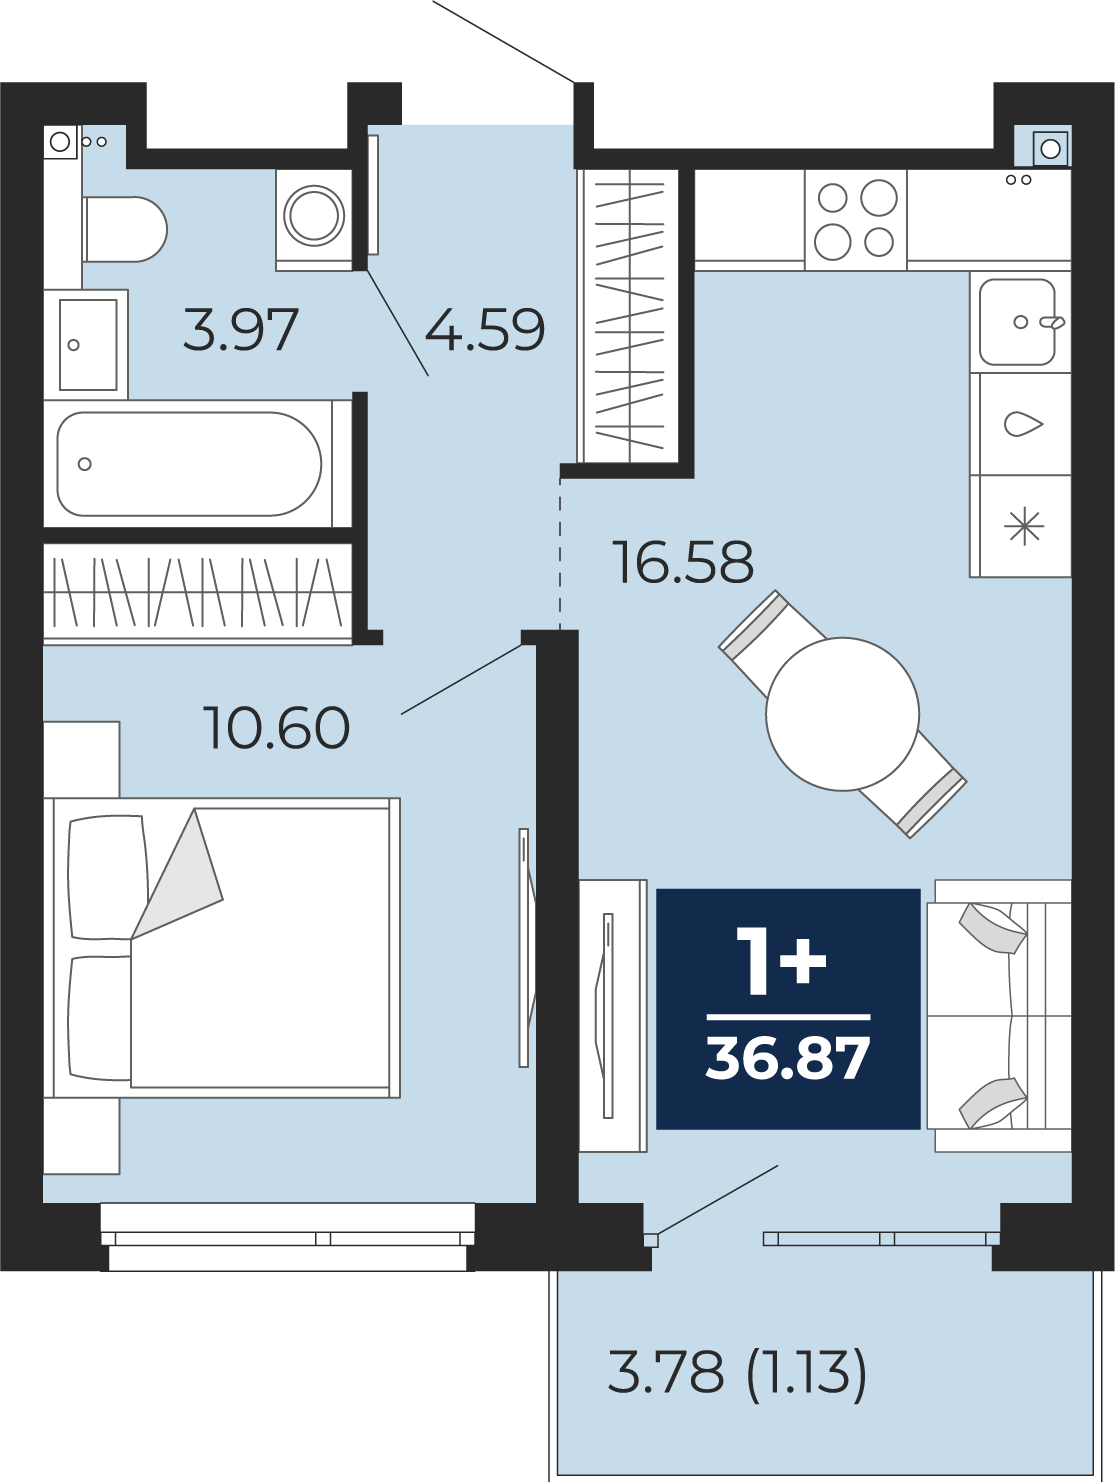 Квартира № 186, 1-комнатная, 36.87 кв. м, 8 этаж